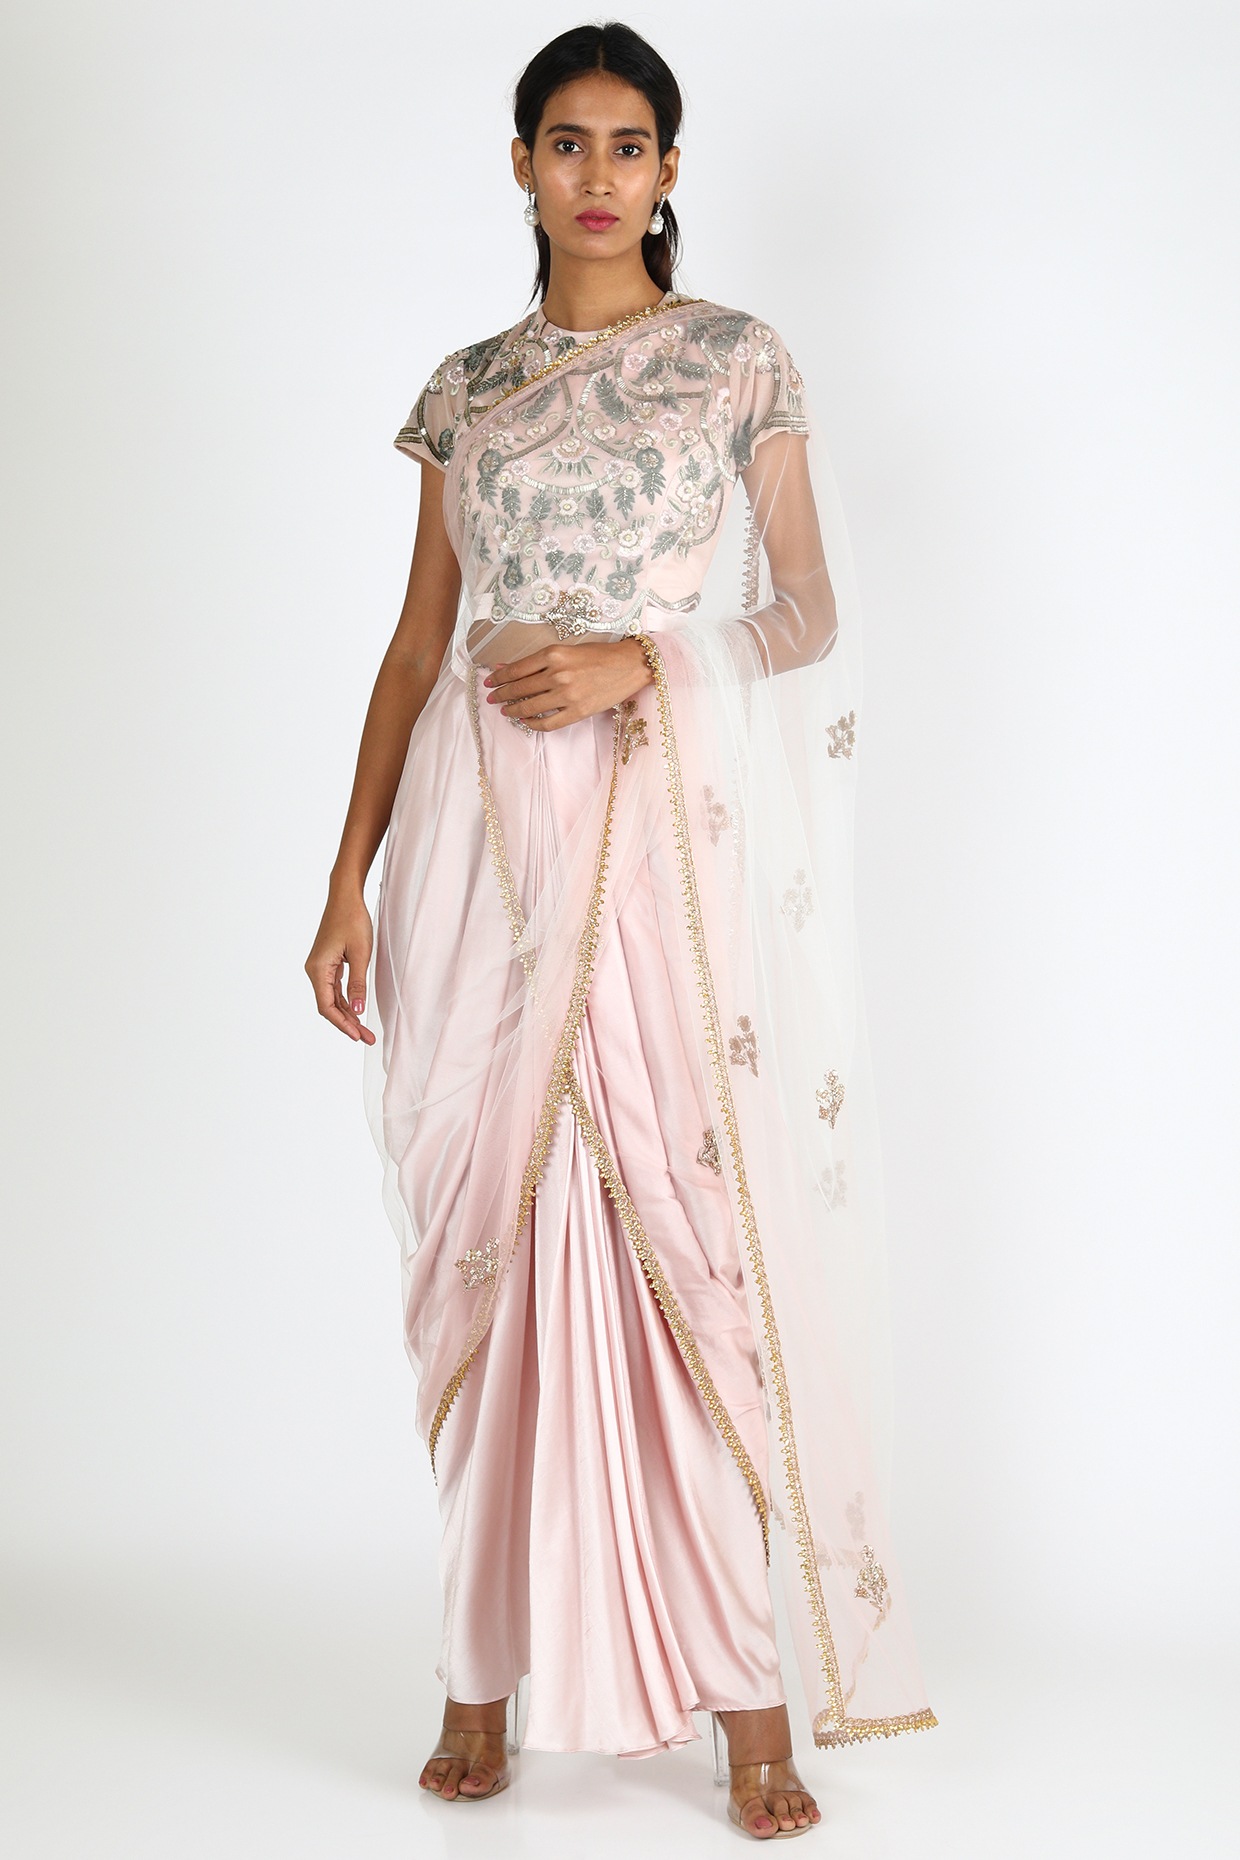 Banarasi Saree in Light Pink : SNEA2577